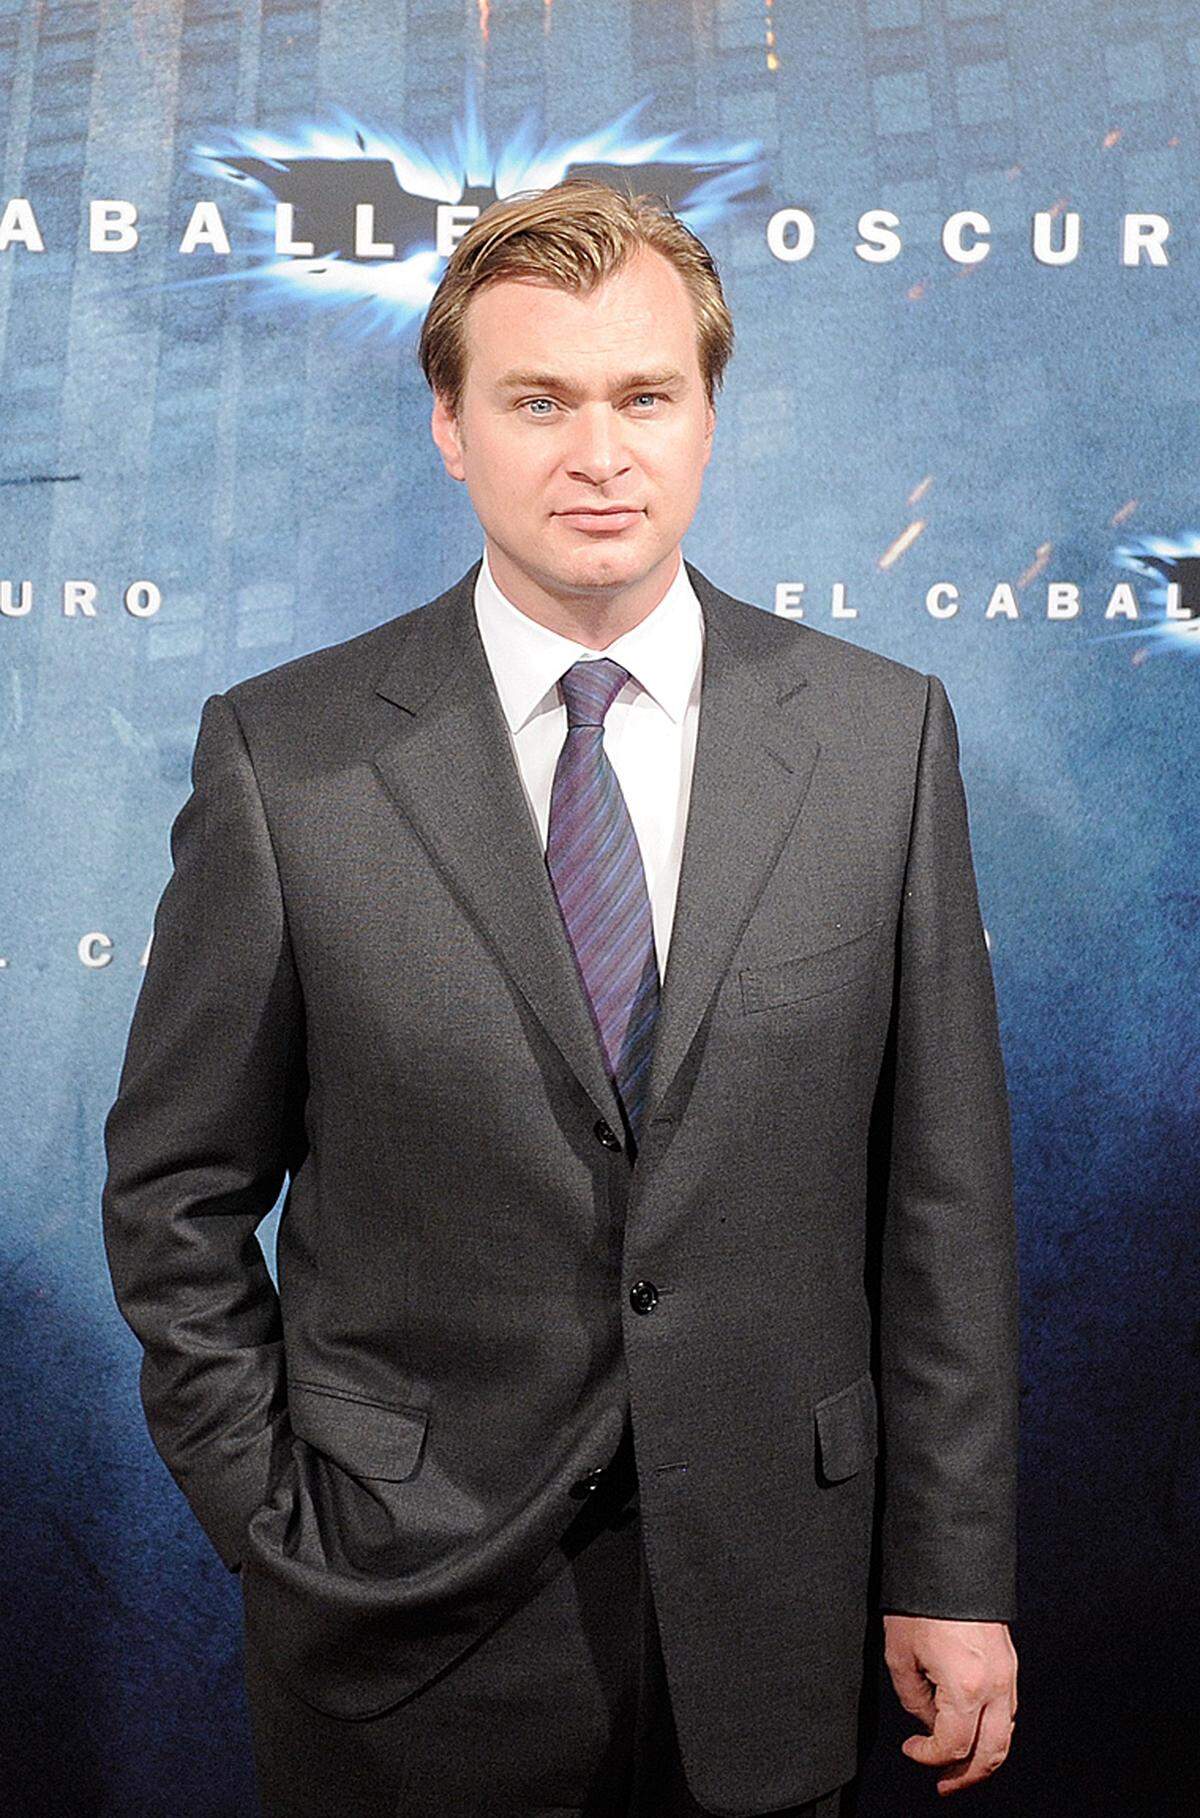 Christopher Nolan gab der Comicfigur 2005 in "Batman Begins" ihre Würde zurück. Christian Bale schlüpfte erstmals in das Kostüm des dunklen Ritters.